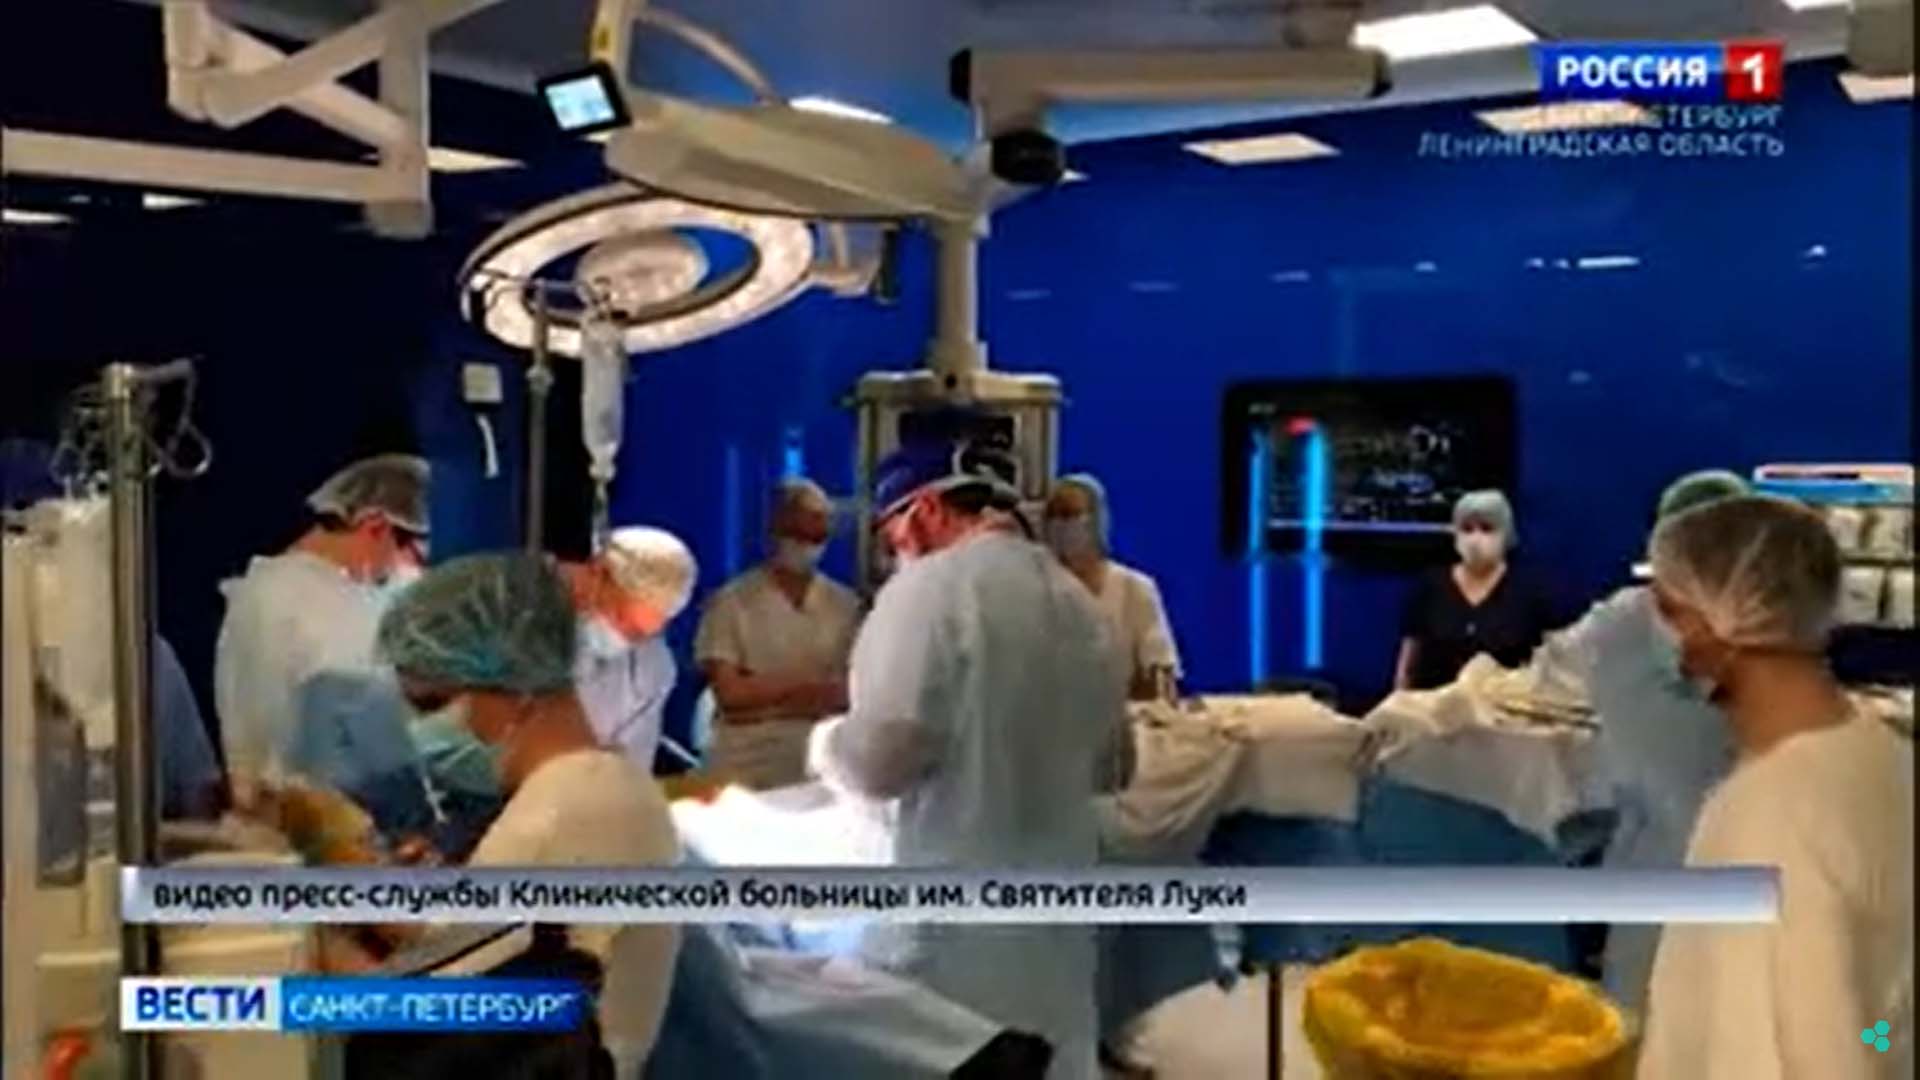 Первая родственная трансплантация в КБ Св. Луки. Репортаж Вести ТВ Петербург.